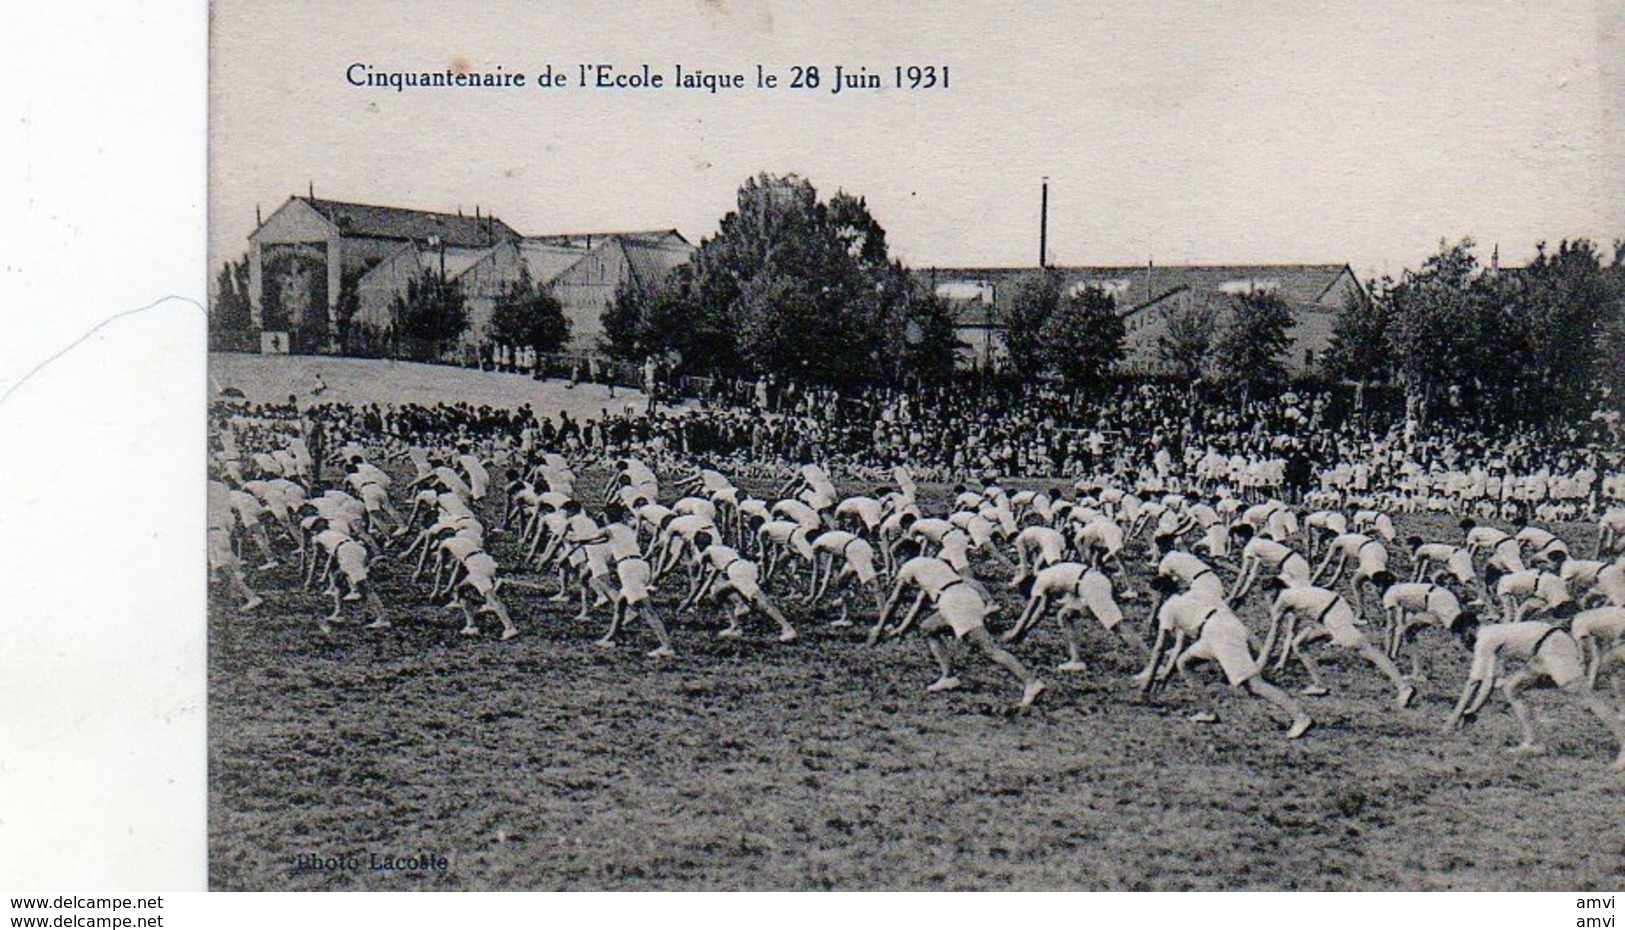 3886 - 71 Châlon Sur Saône - Cinquantenaire De L'Ecole LaÏque Le 28 Juin 1931 - Chalon Sur Saone